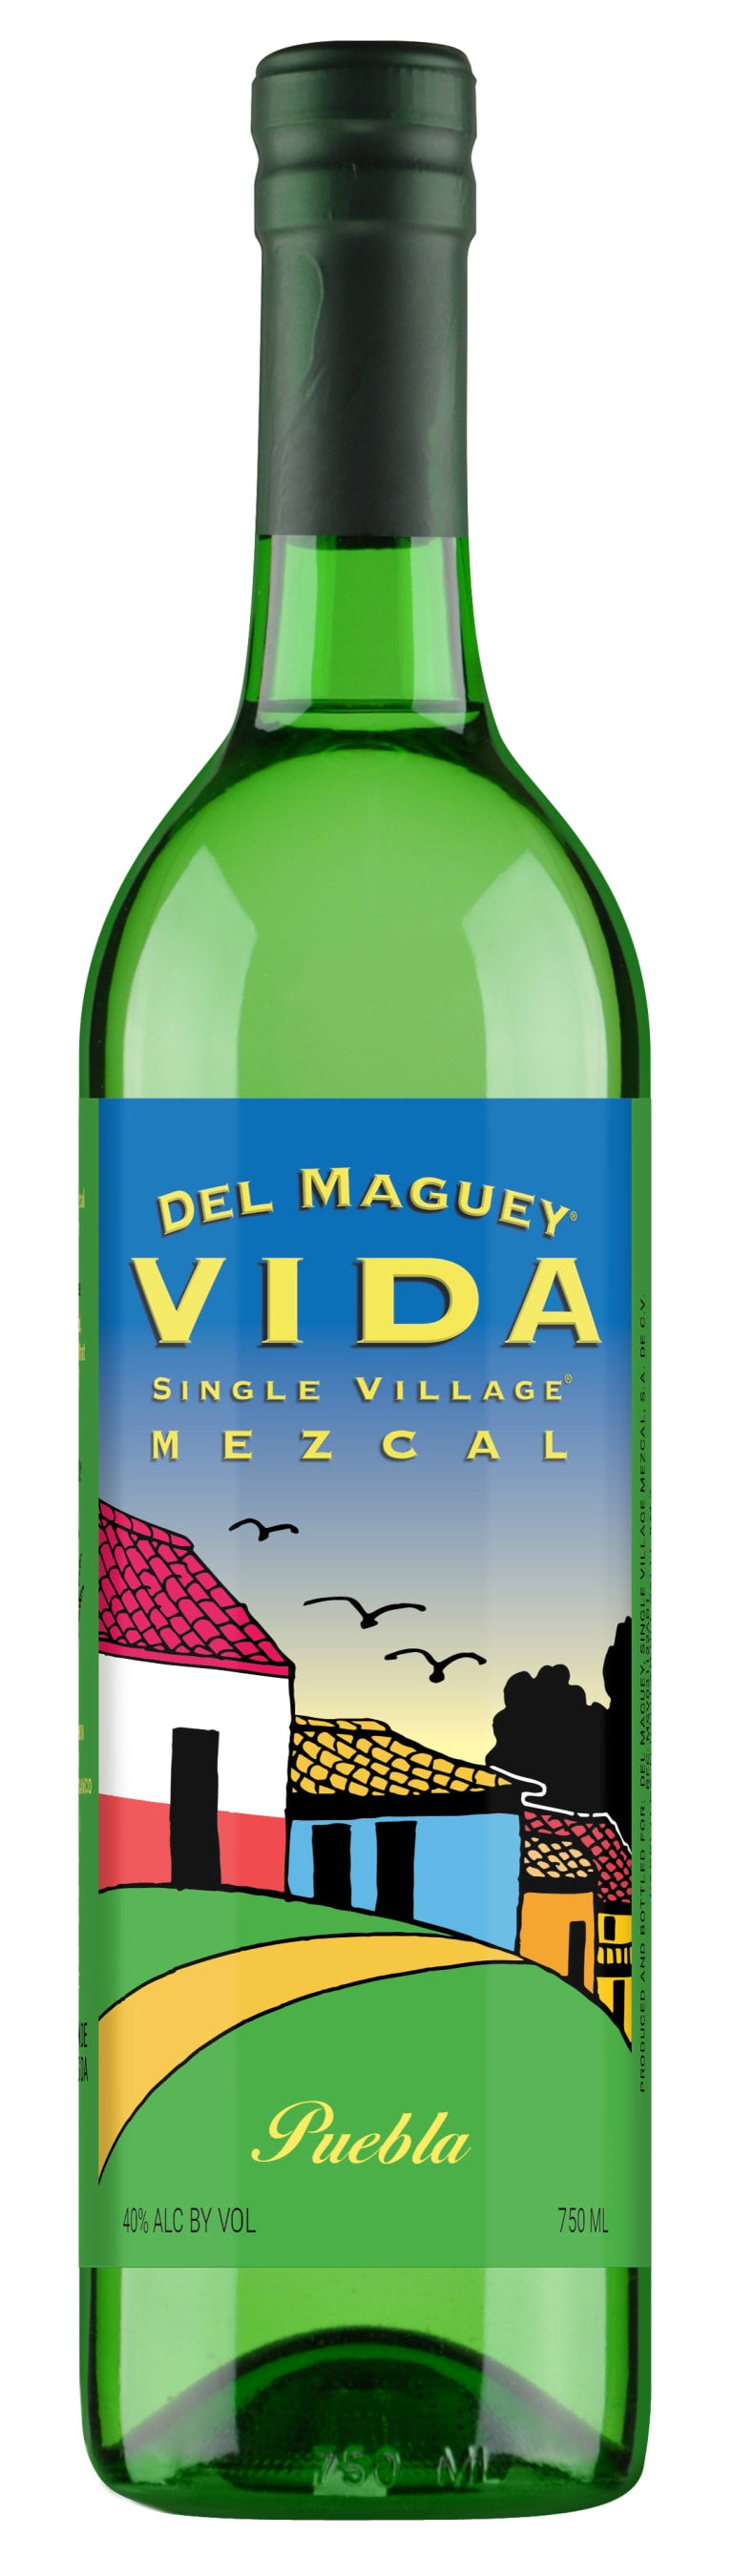 Del Maguey Vida Single Village Puebla  Mezcal 750ml